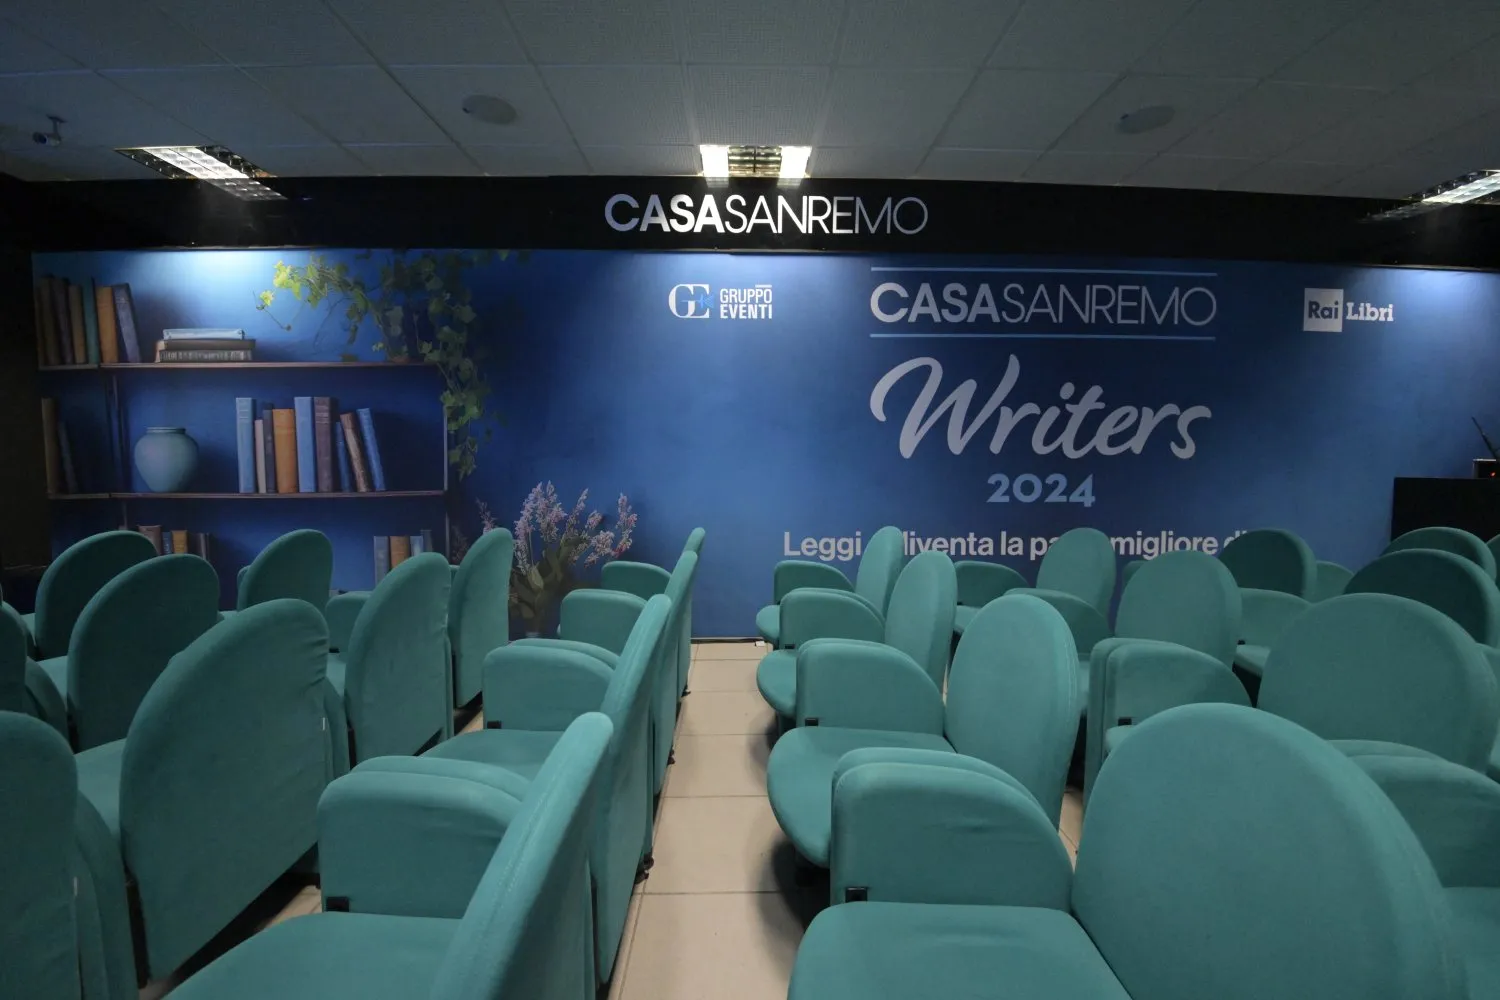 Casa Sanremo Writers 2024 - ilRecensore.it